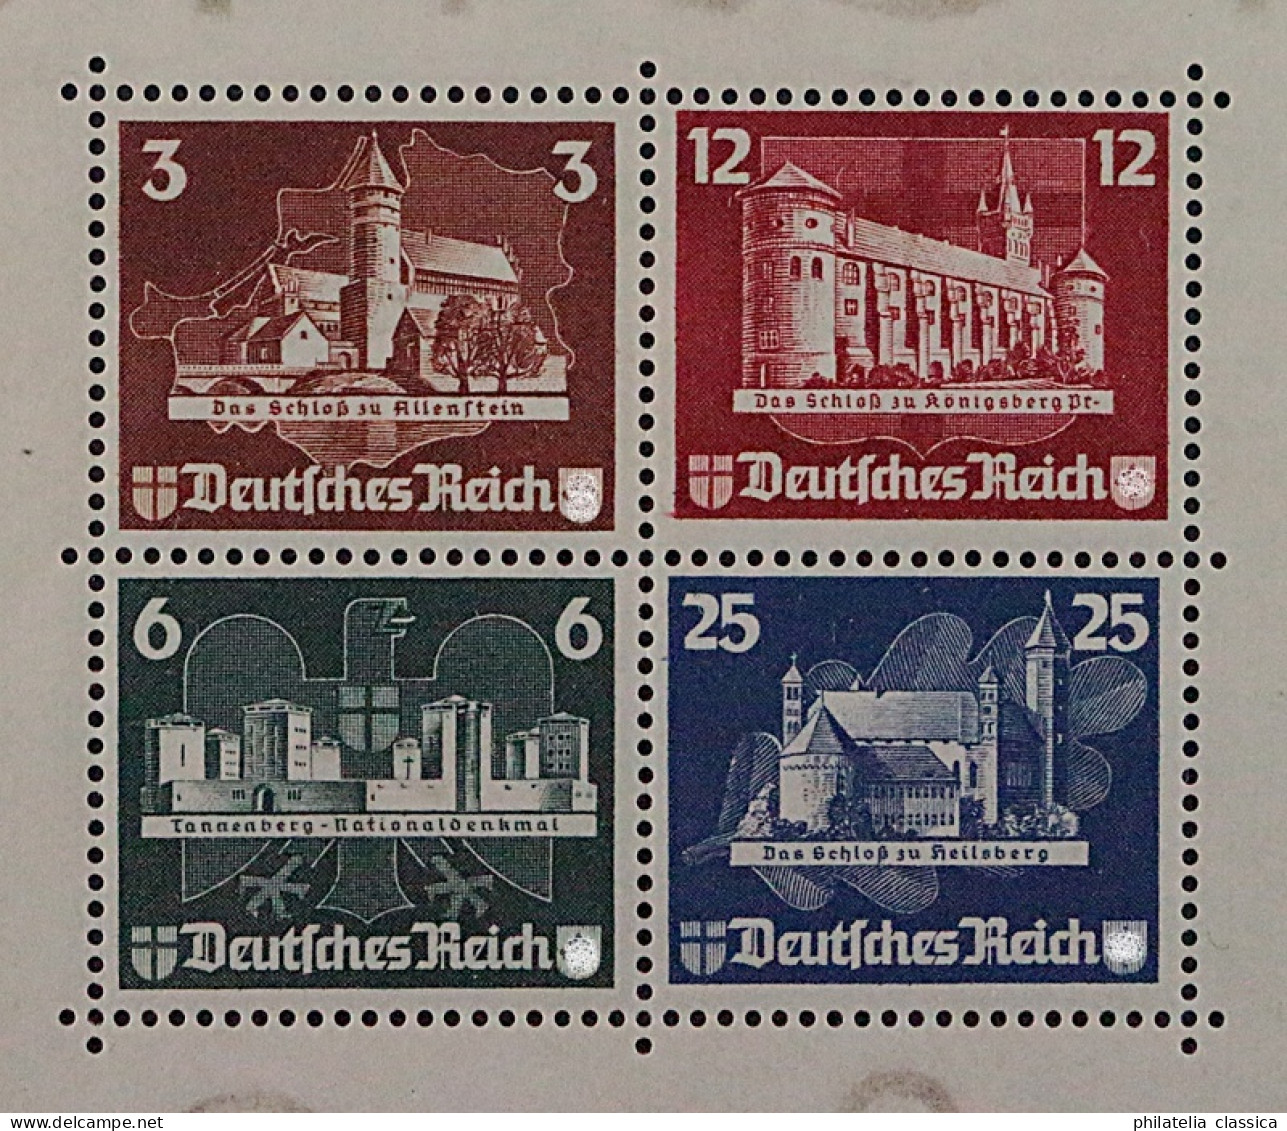 Dt. Reich  Bl. 3 *  OSTROPA-Block 1935, Originalgummi, Top-Qualität, KW 1300,- € - Nuovi